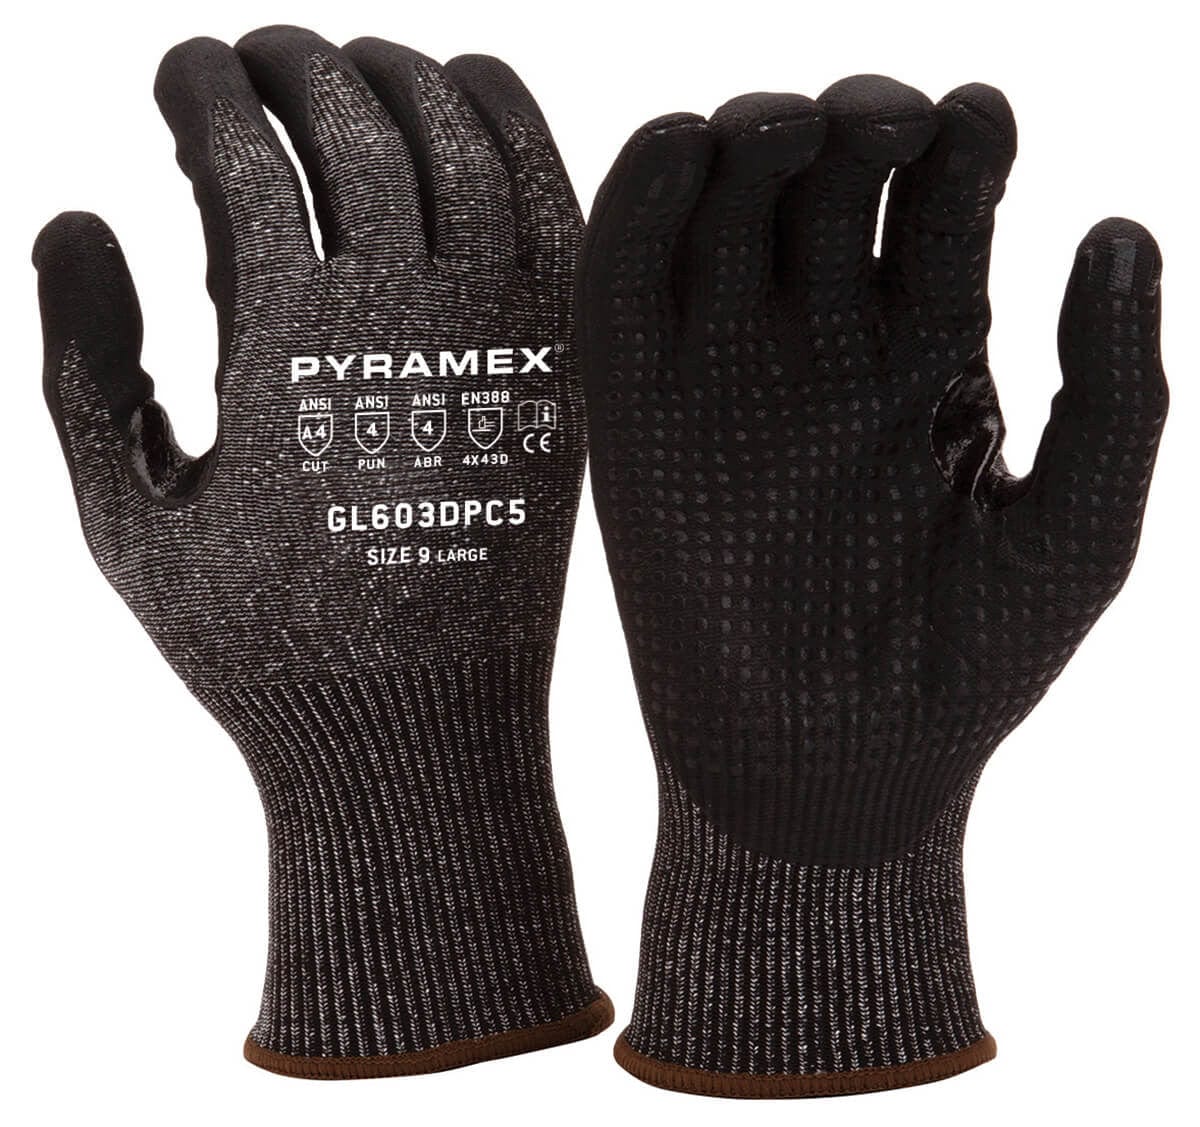 Pyramex GL603DPC5 Cut-Resistant A4 Foam Nitrile Dipped Gloves